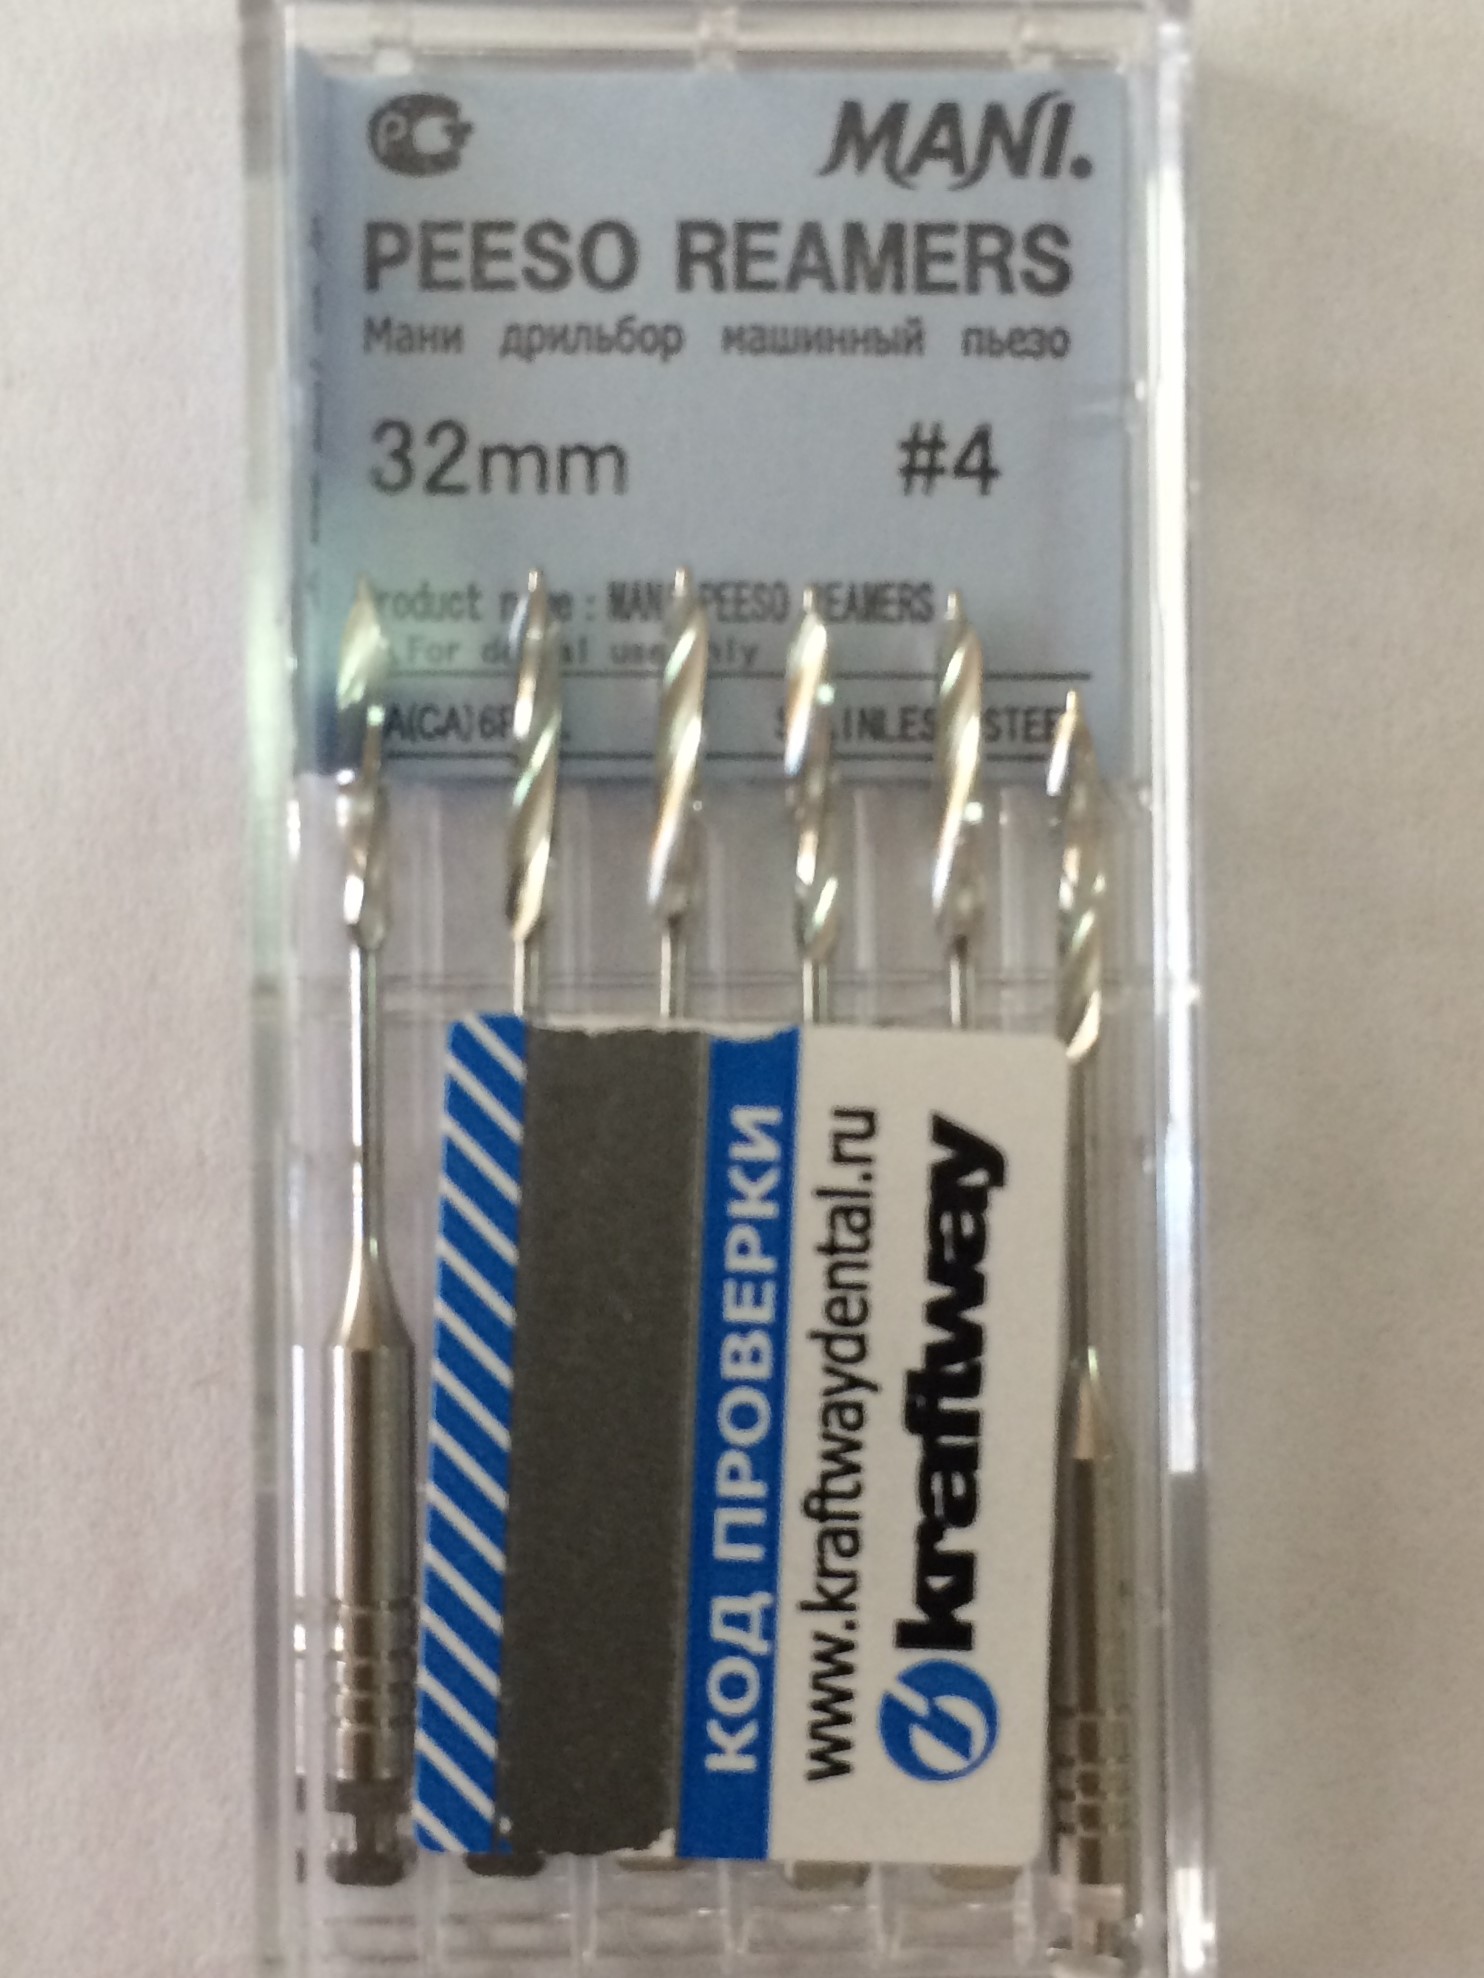 Пьезо Ример №4 - Peeso Reamers – корневые дрильборы машинные для углового наконечника, длина 32 мм